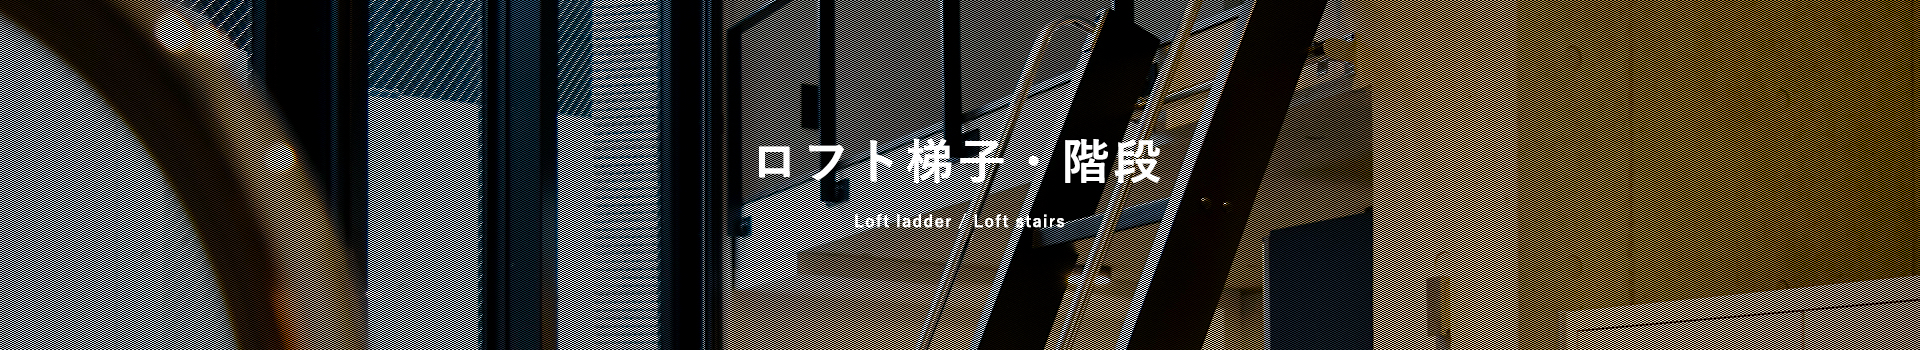 株式会社ベストワンはロフト用木製梯子・階段を販売しています。